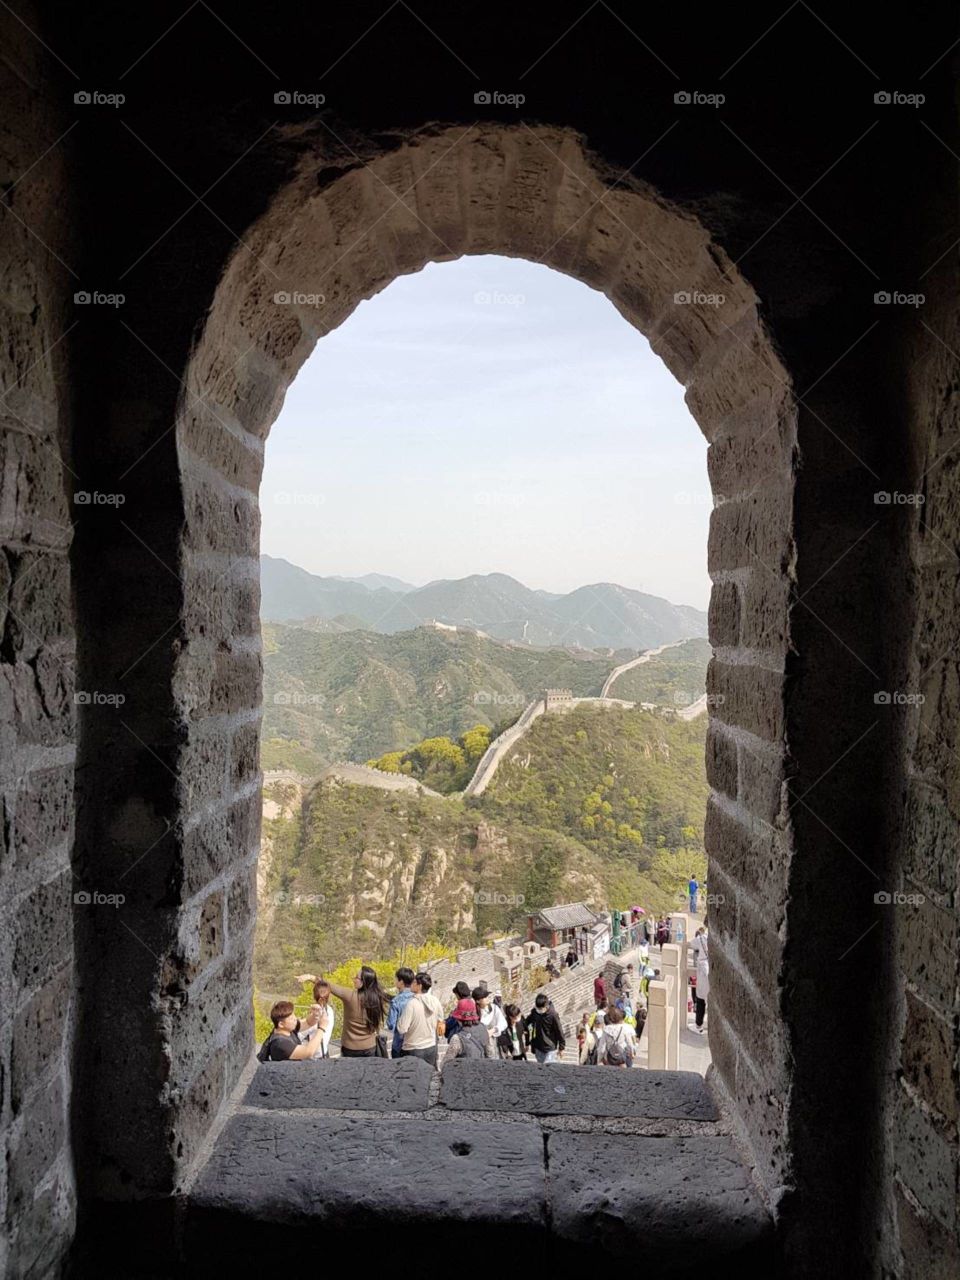 Vacation at Great Wall